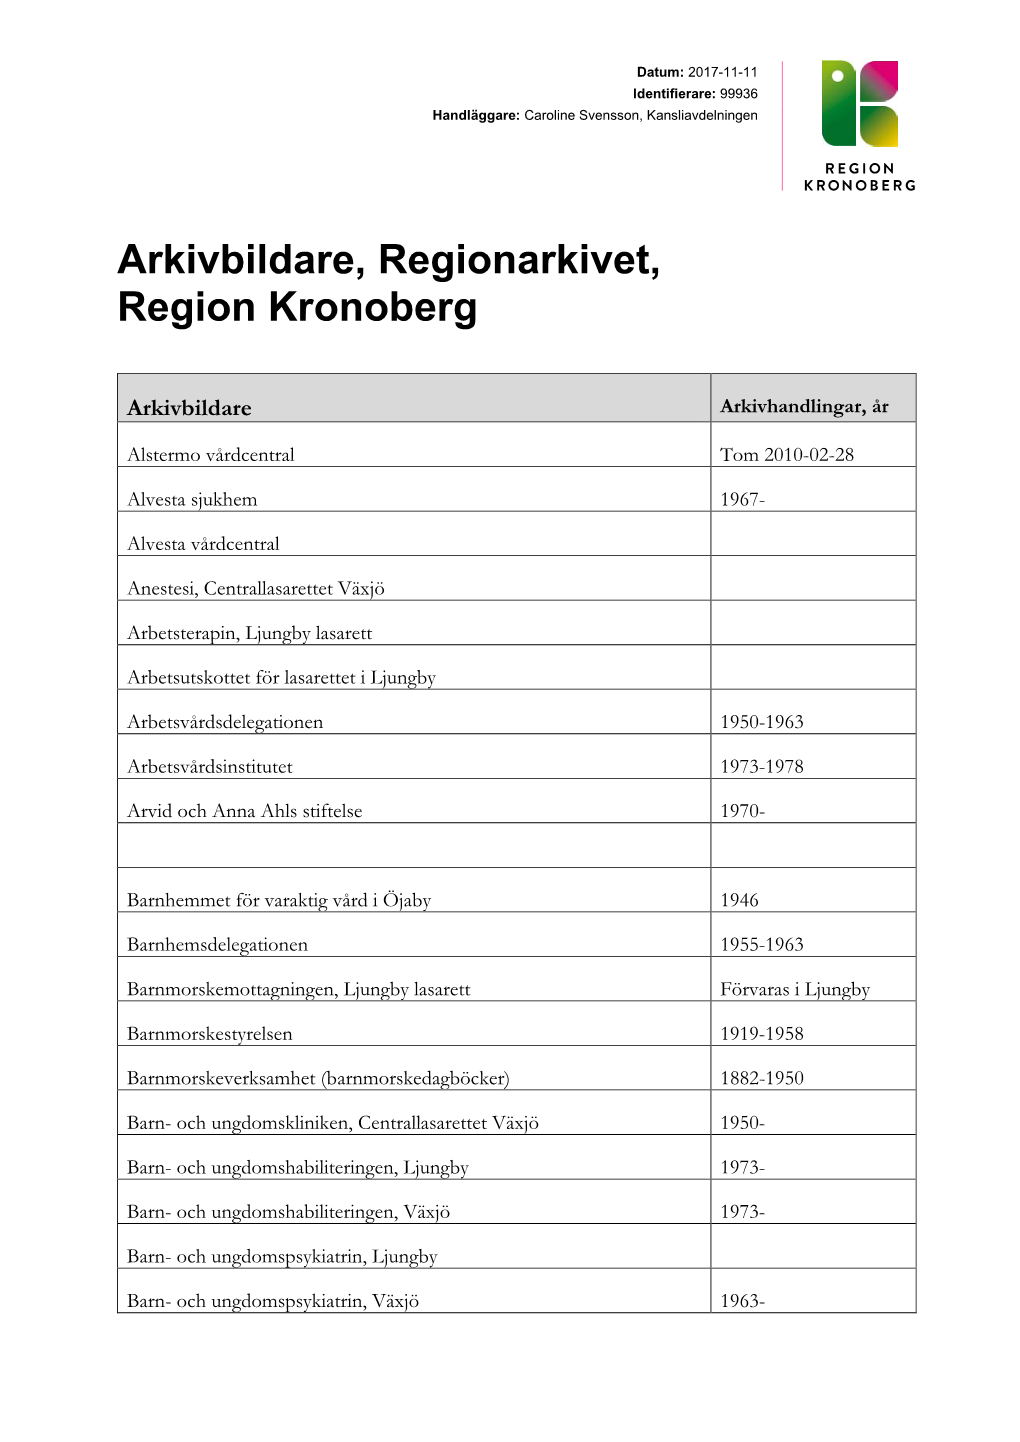 Arkivbildare, Regionarkivet, Region Kronoberg